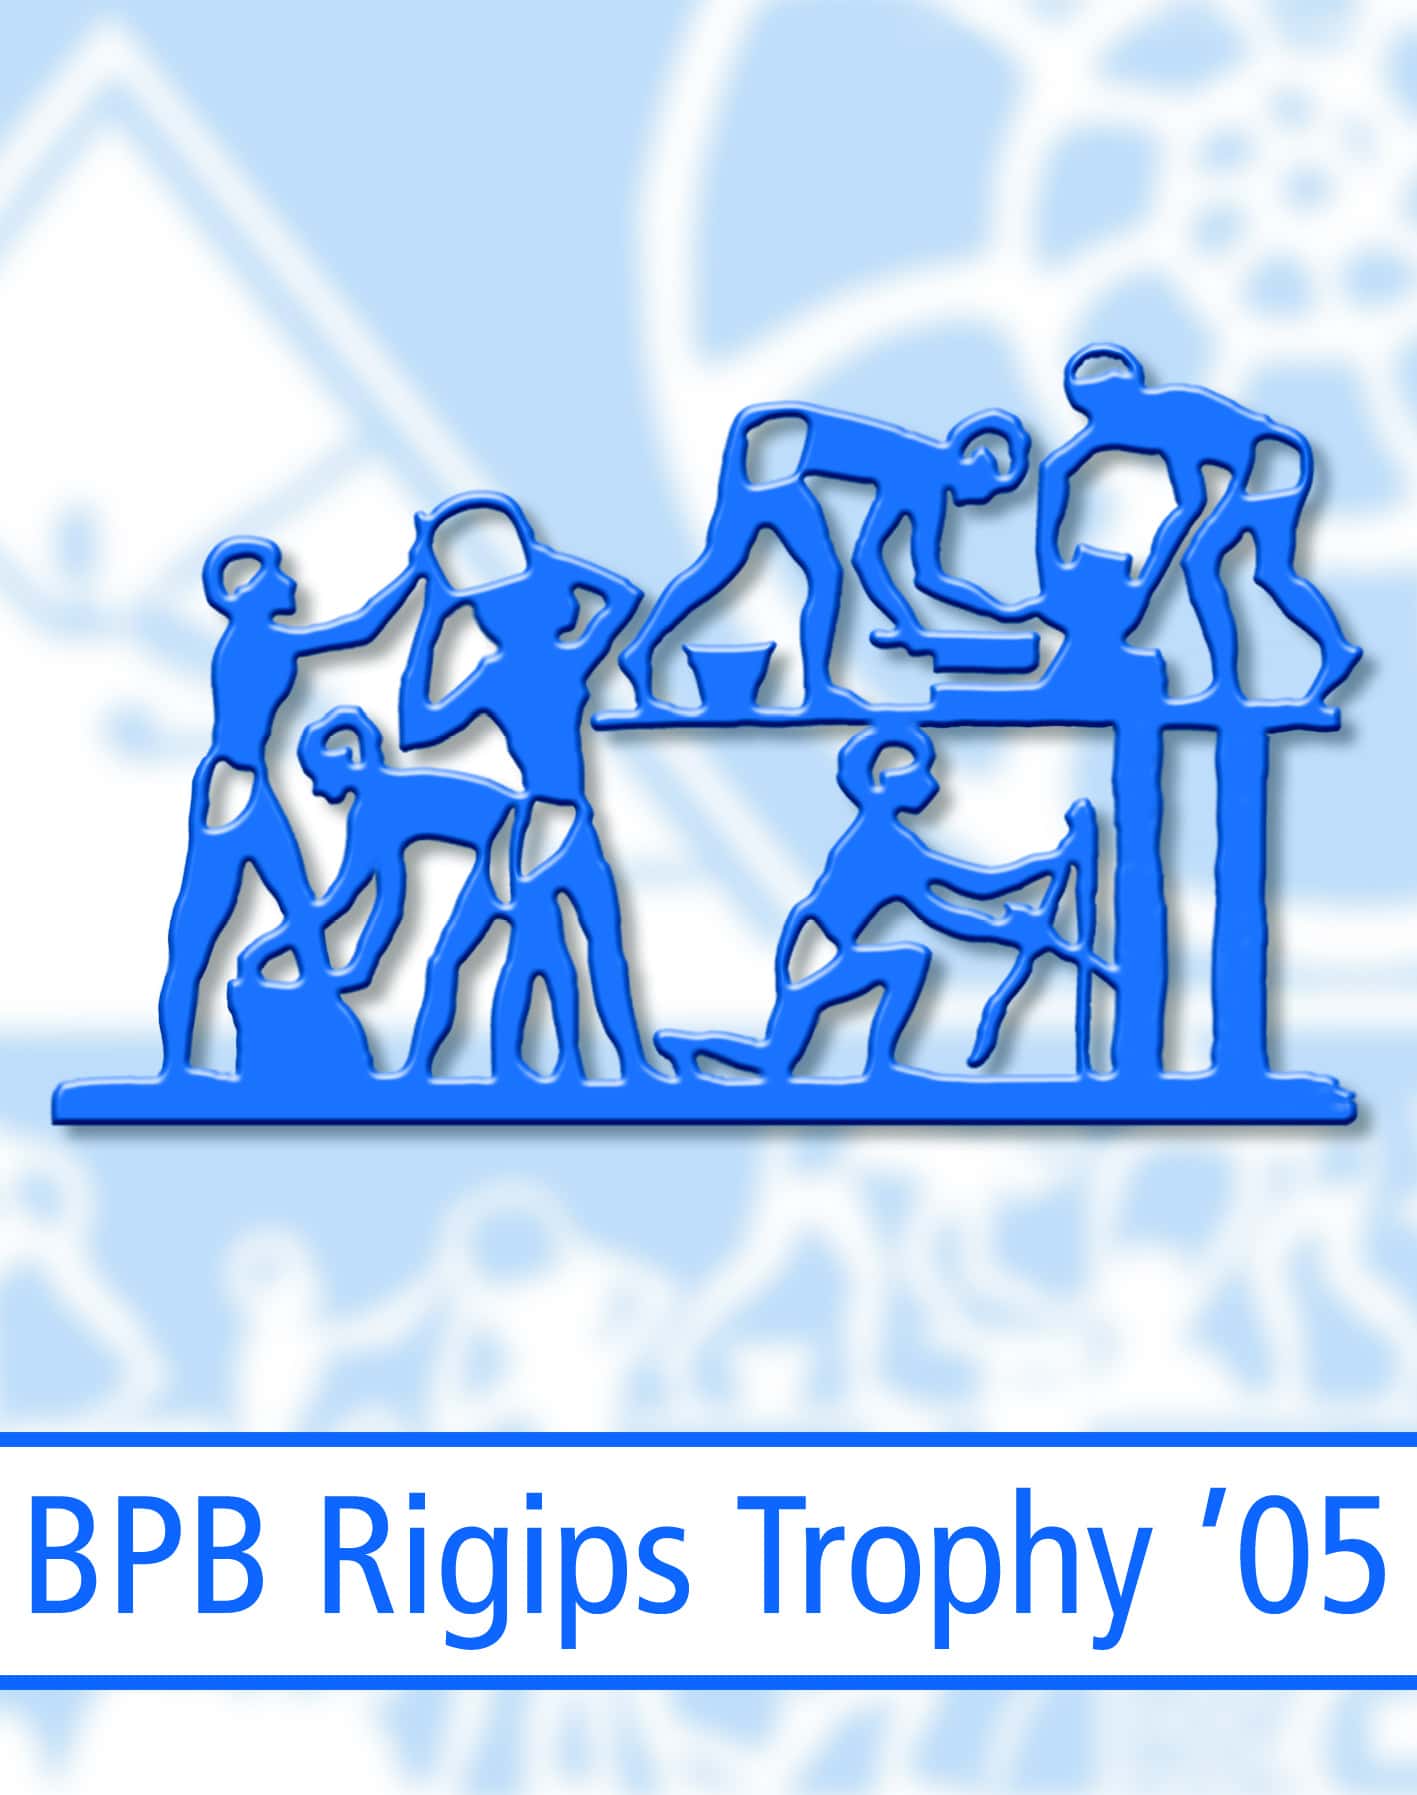 Teilnahme an der 6. Rigips Trophy 2005 / 2006